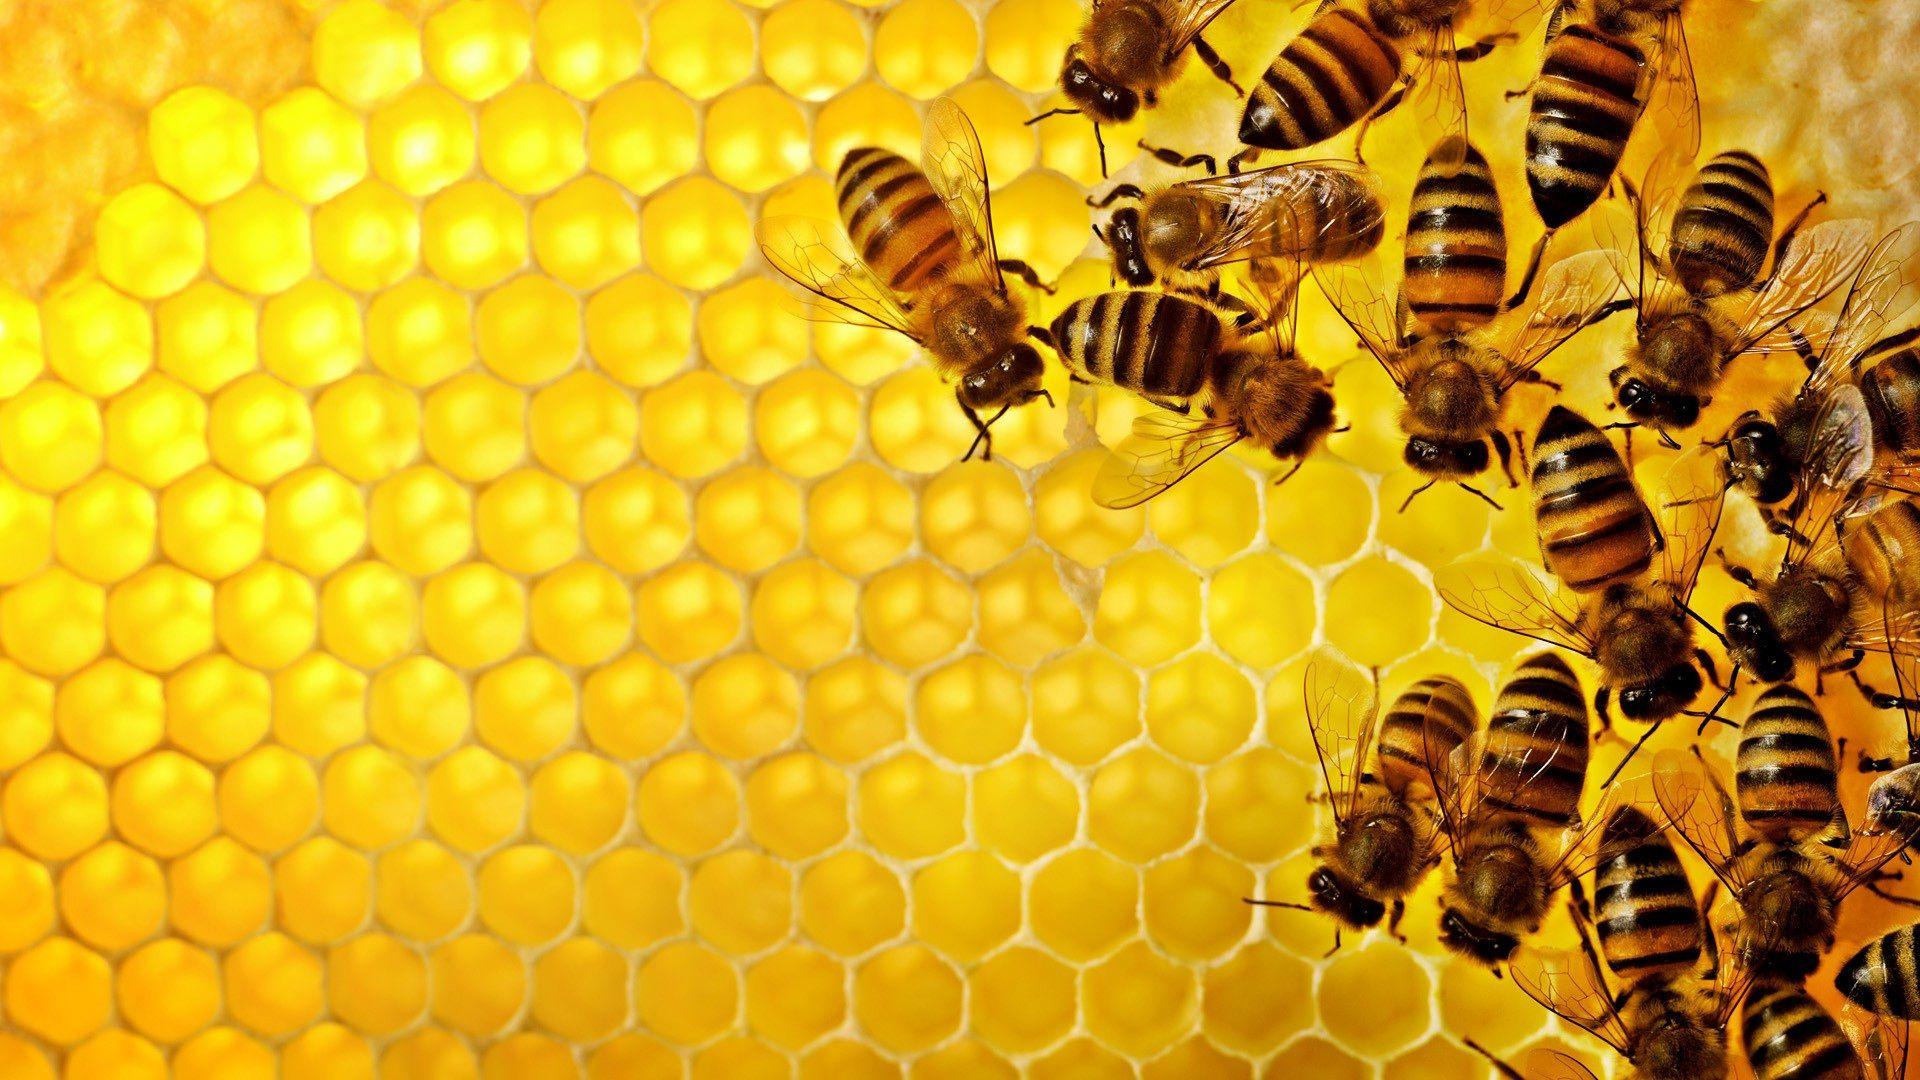 Honey bee wallpapers